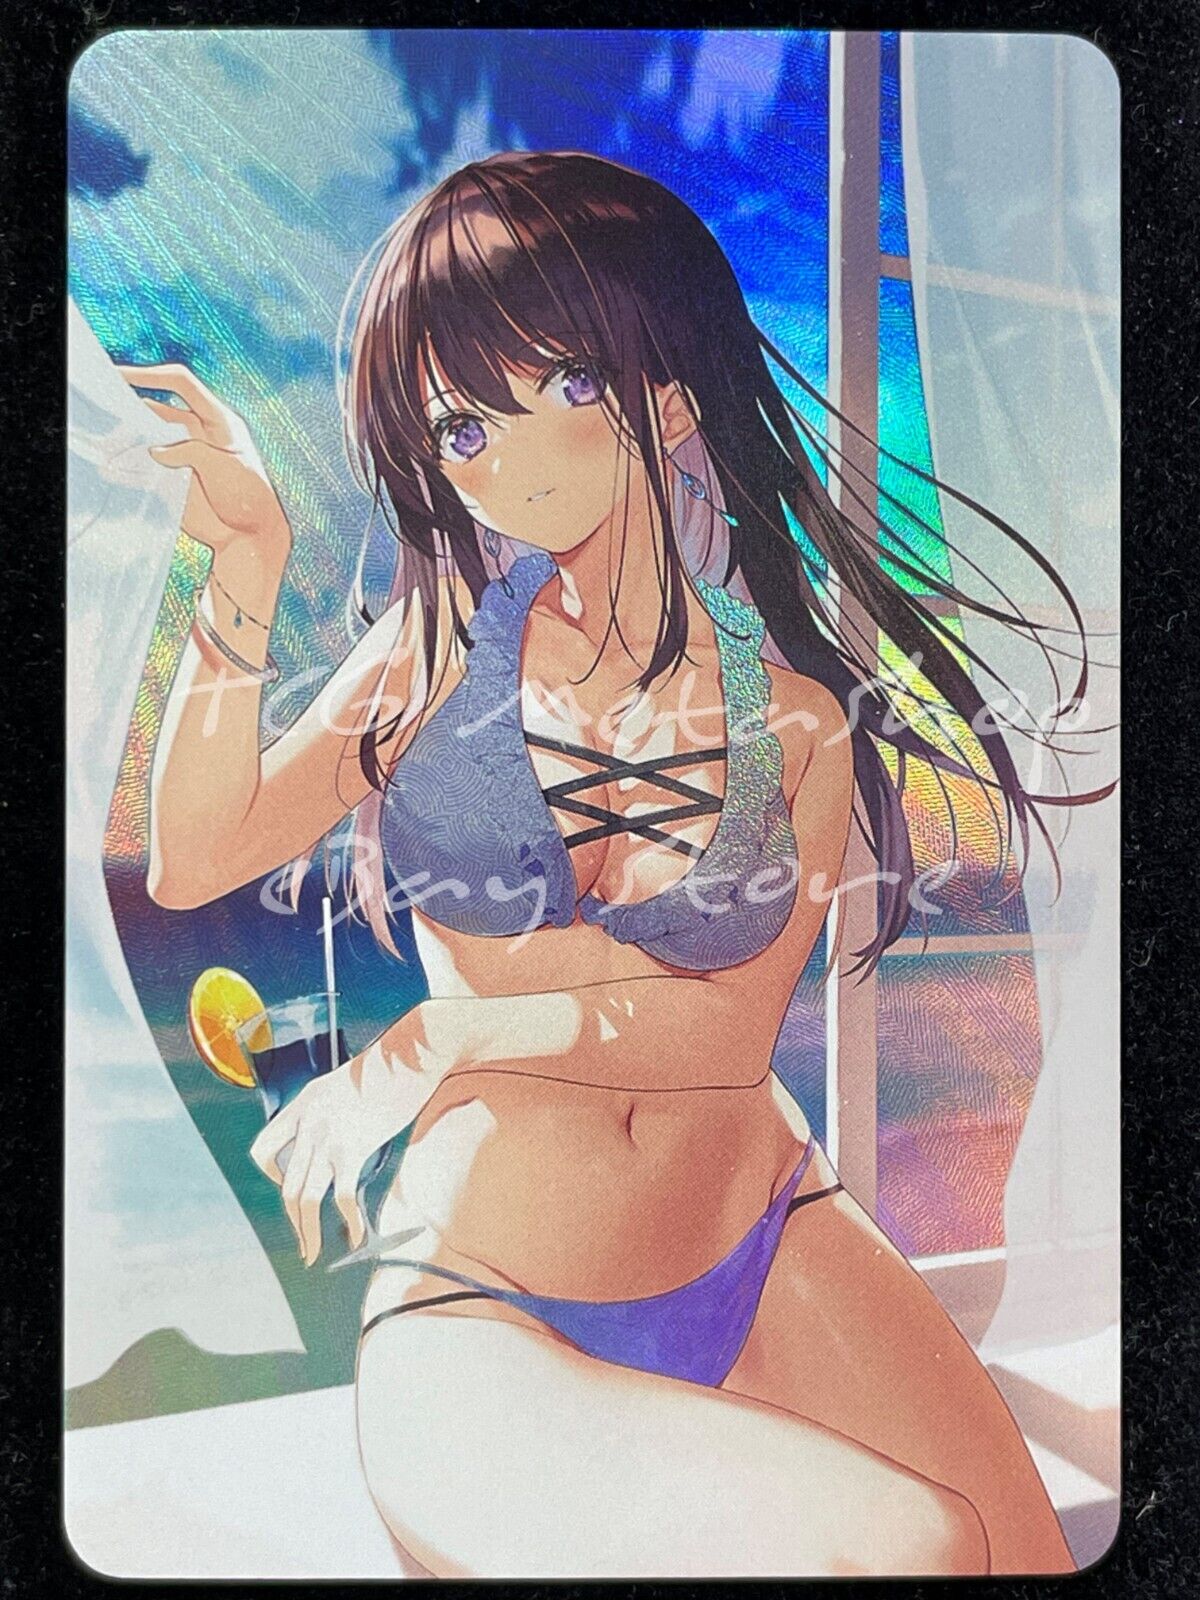 🔥 Cute Girl Goddess Story Anime Card ACG # 1709 🔥